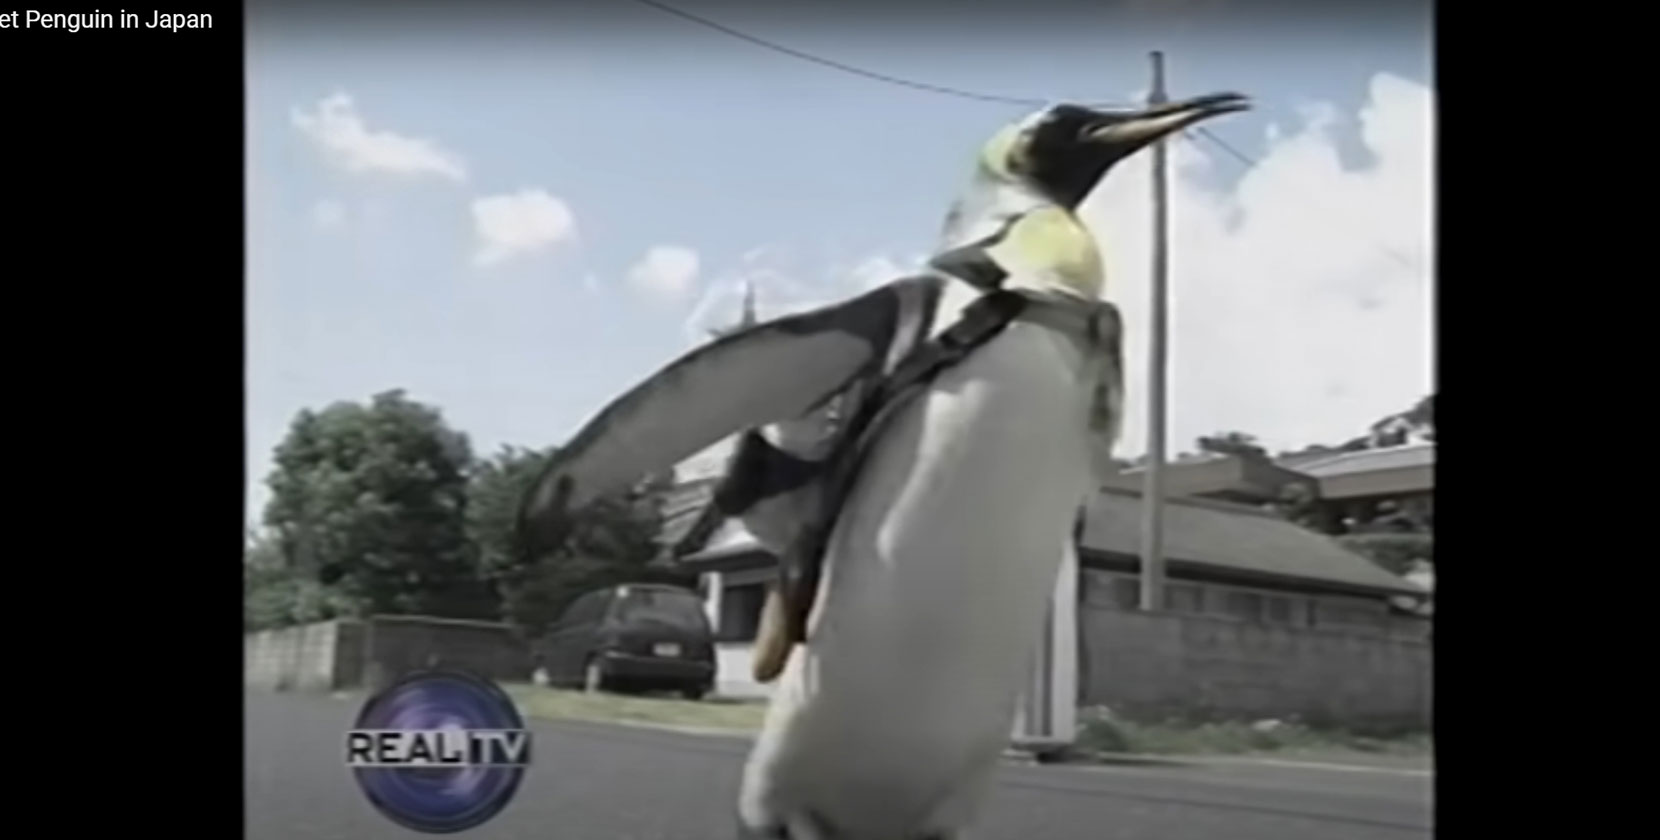 日本ではペンギンがおつかいにいくのか おつかいペンギンララへの海外の反応 Cube Media